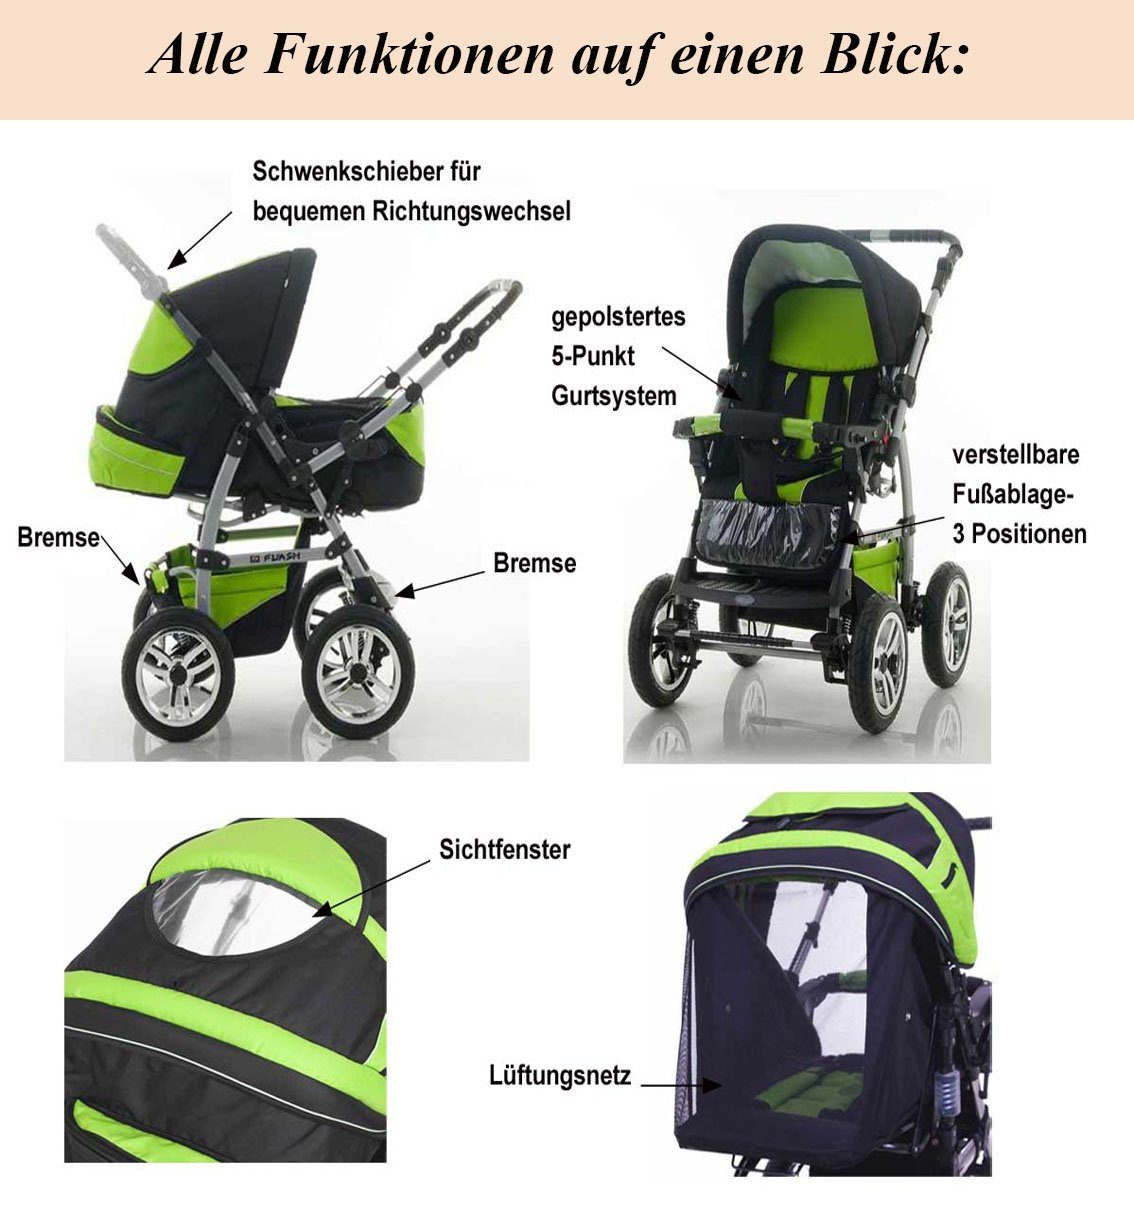 17 Pink-Leo babies-on-wheels Kombi-Kinderwagen - in Farben 1 18 Teile - Kinderwagen-Set Autositz Flash 5 inkl. in